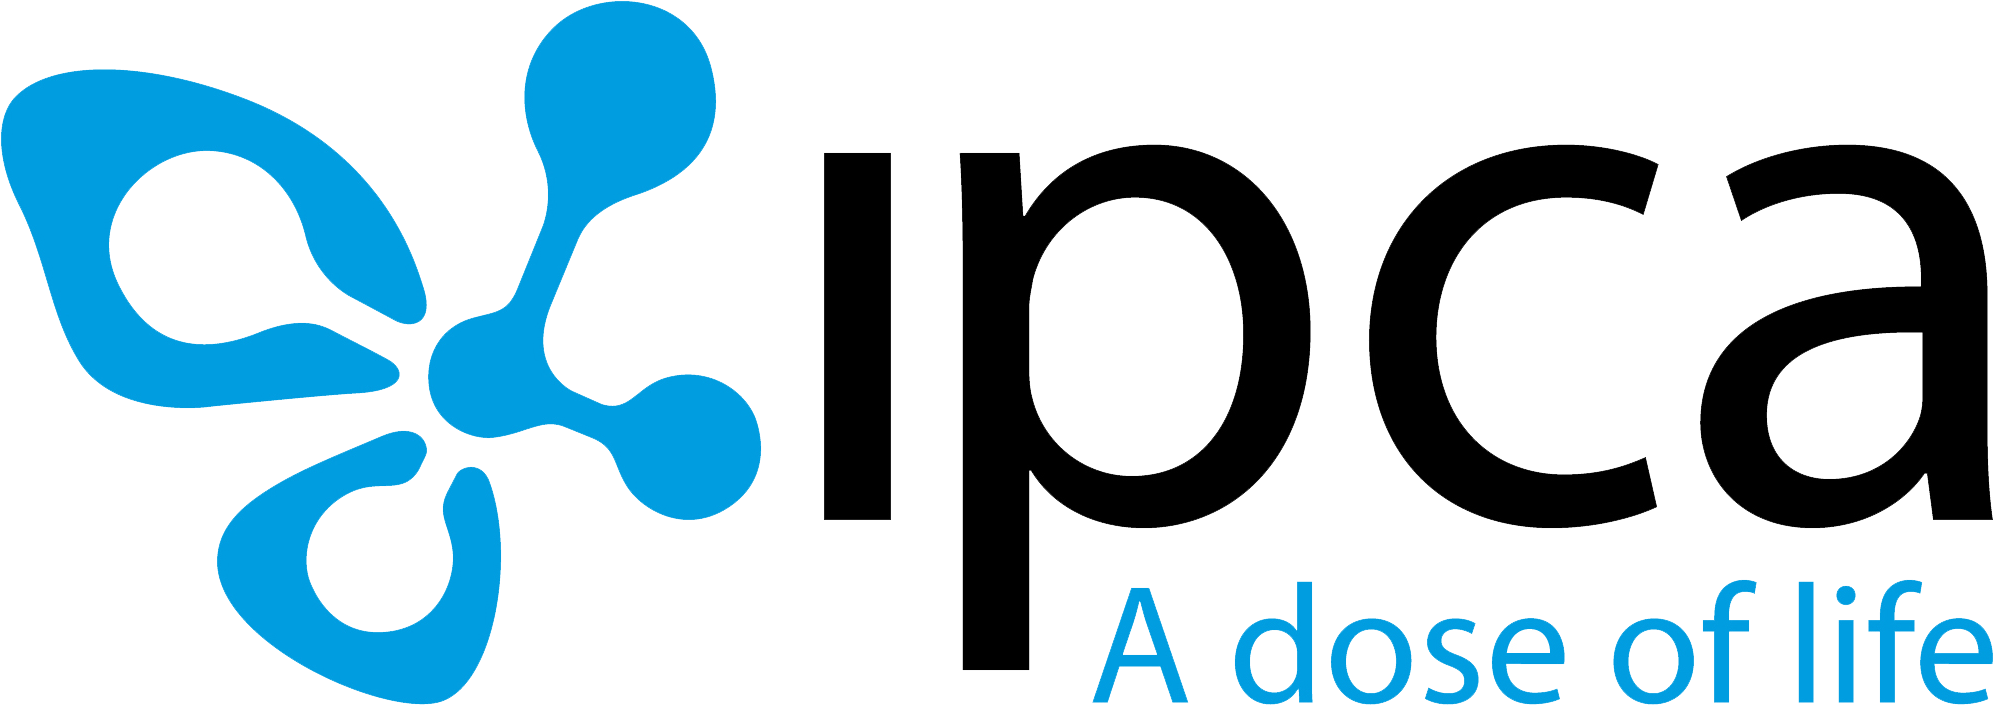 Our Clients - Ipca Laboratories Ltd Logo Png (2000x720)